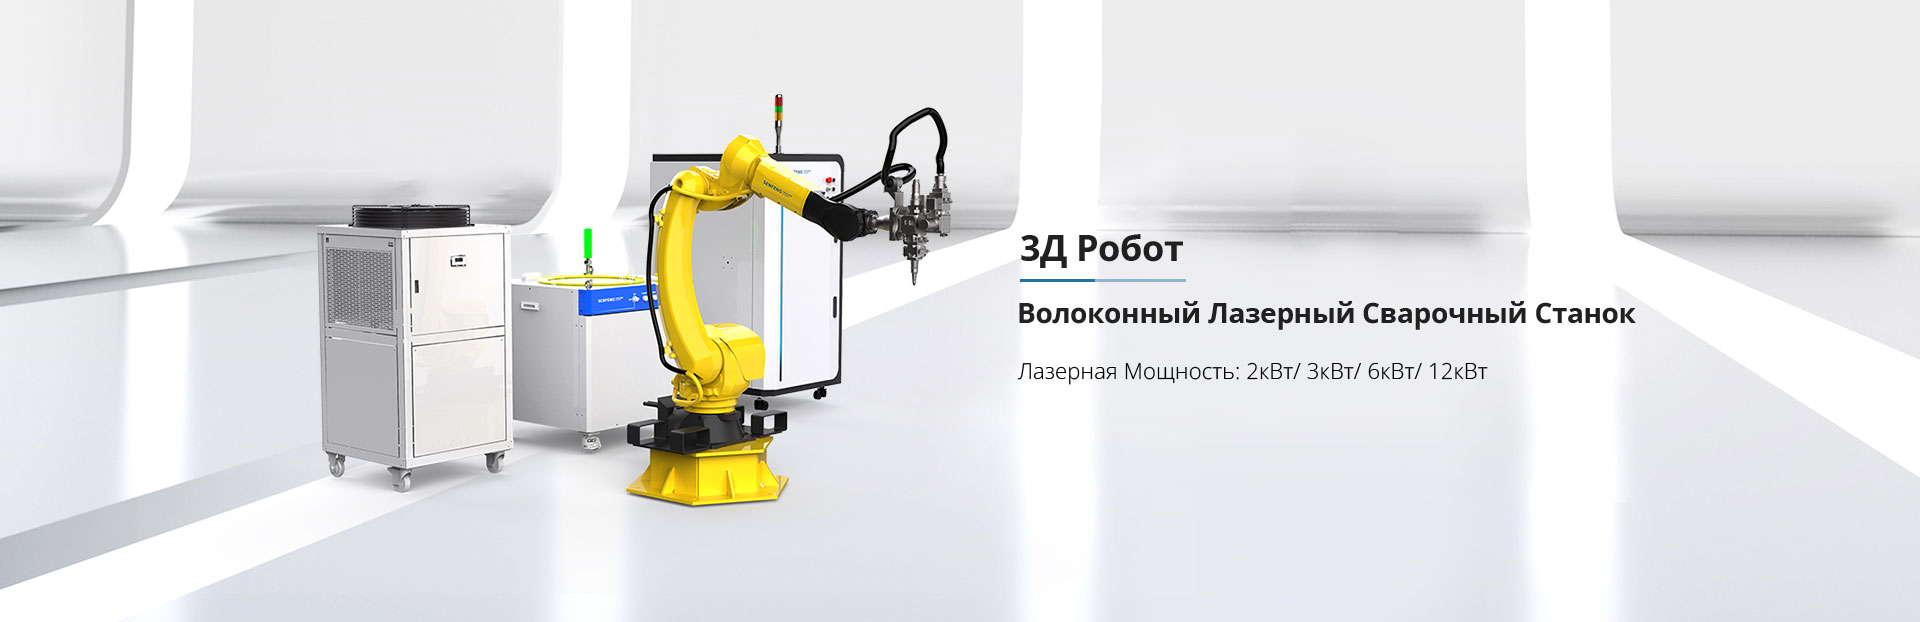 3Д Робот Волоконный Лазерный Сварочный Станок